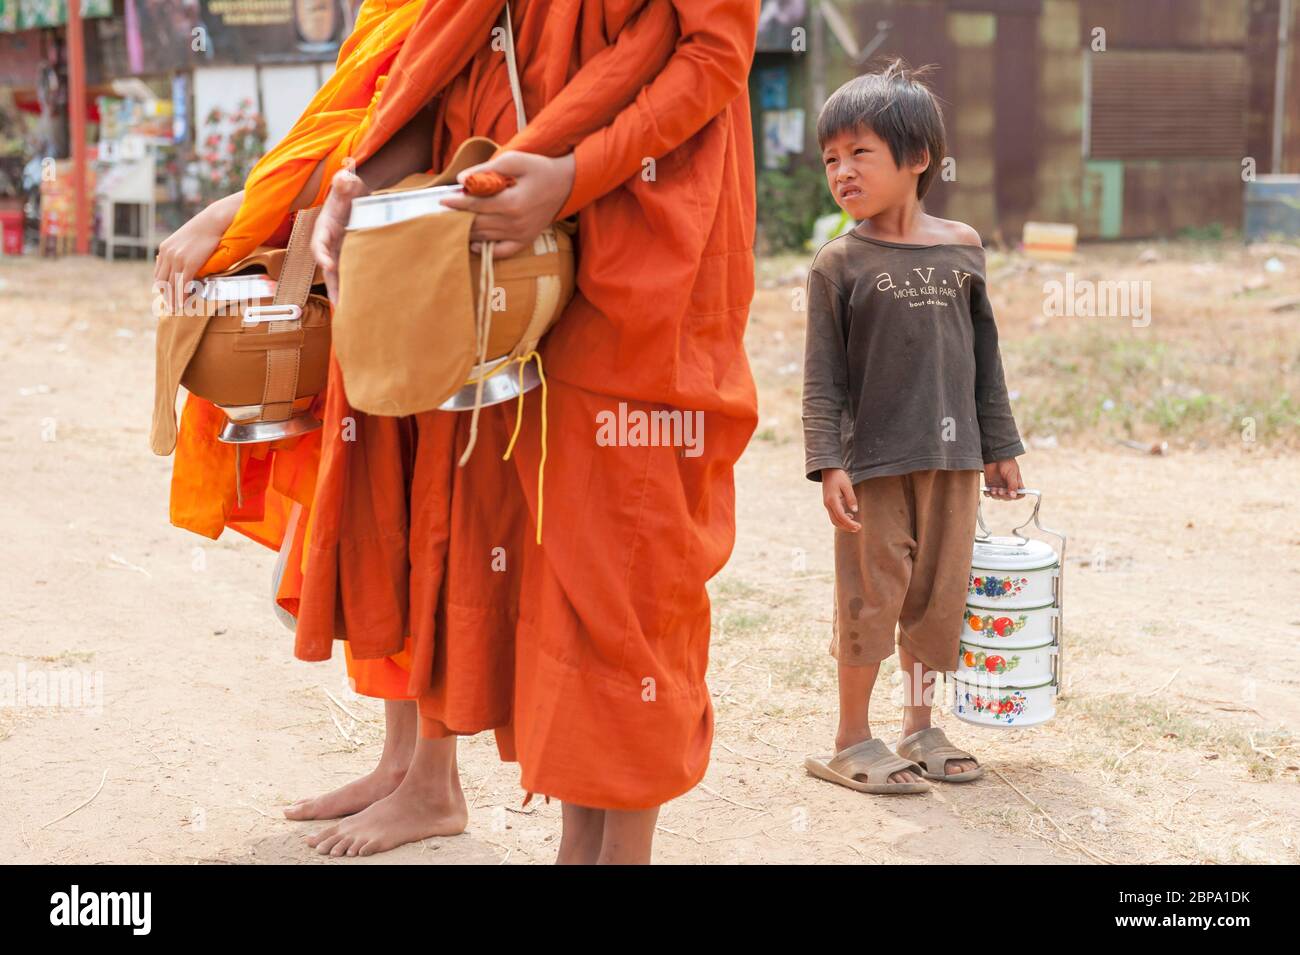 Un jeune garçon cambodgien regarde comme des moines buddist s'arrêtent pour des almsdonning. Cambodge central, Asie du Sud-est Banque D'Images